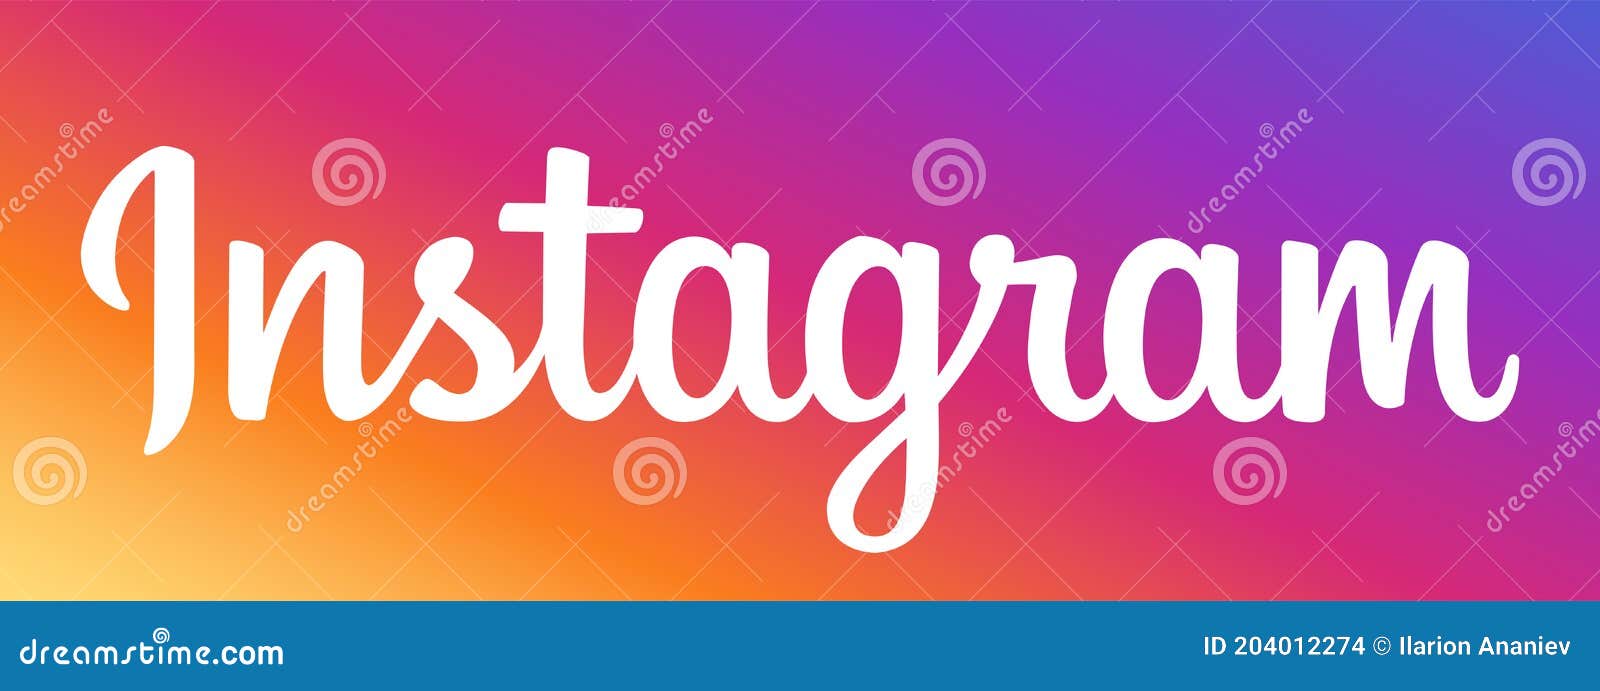 Instagram logo sẽ được cập nhật tươi mới hơn năm